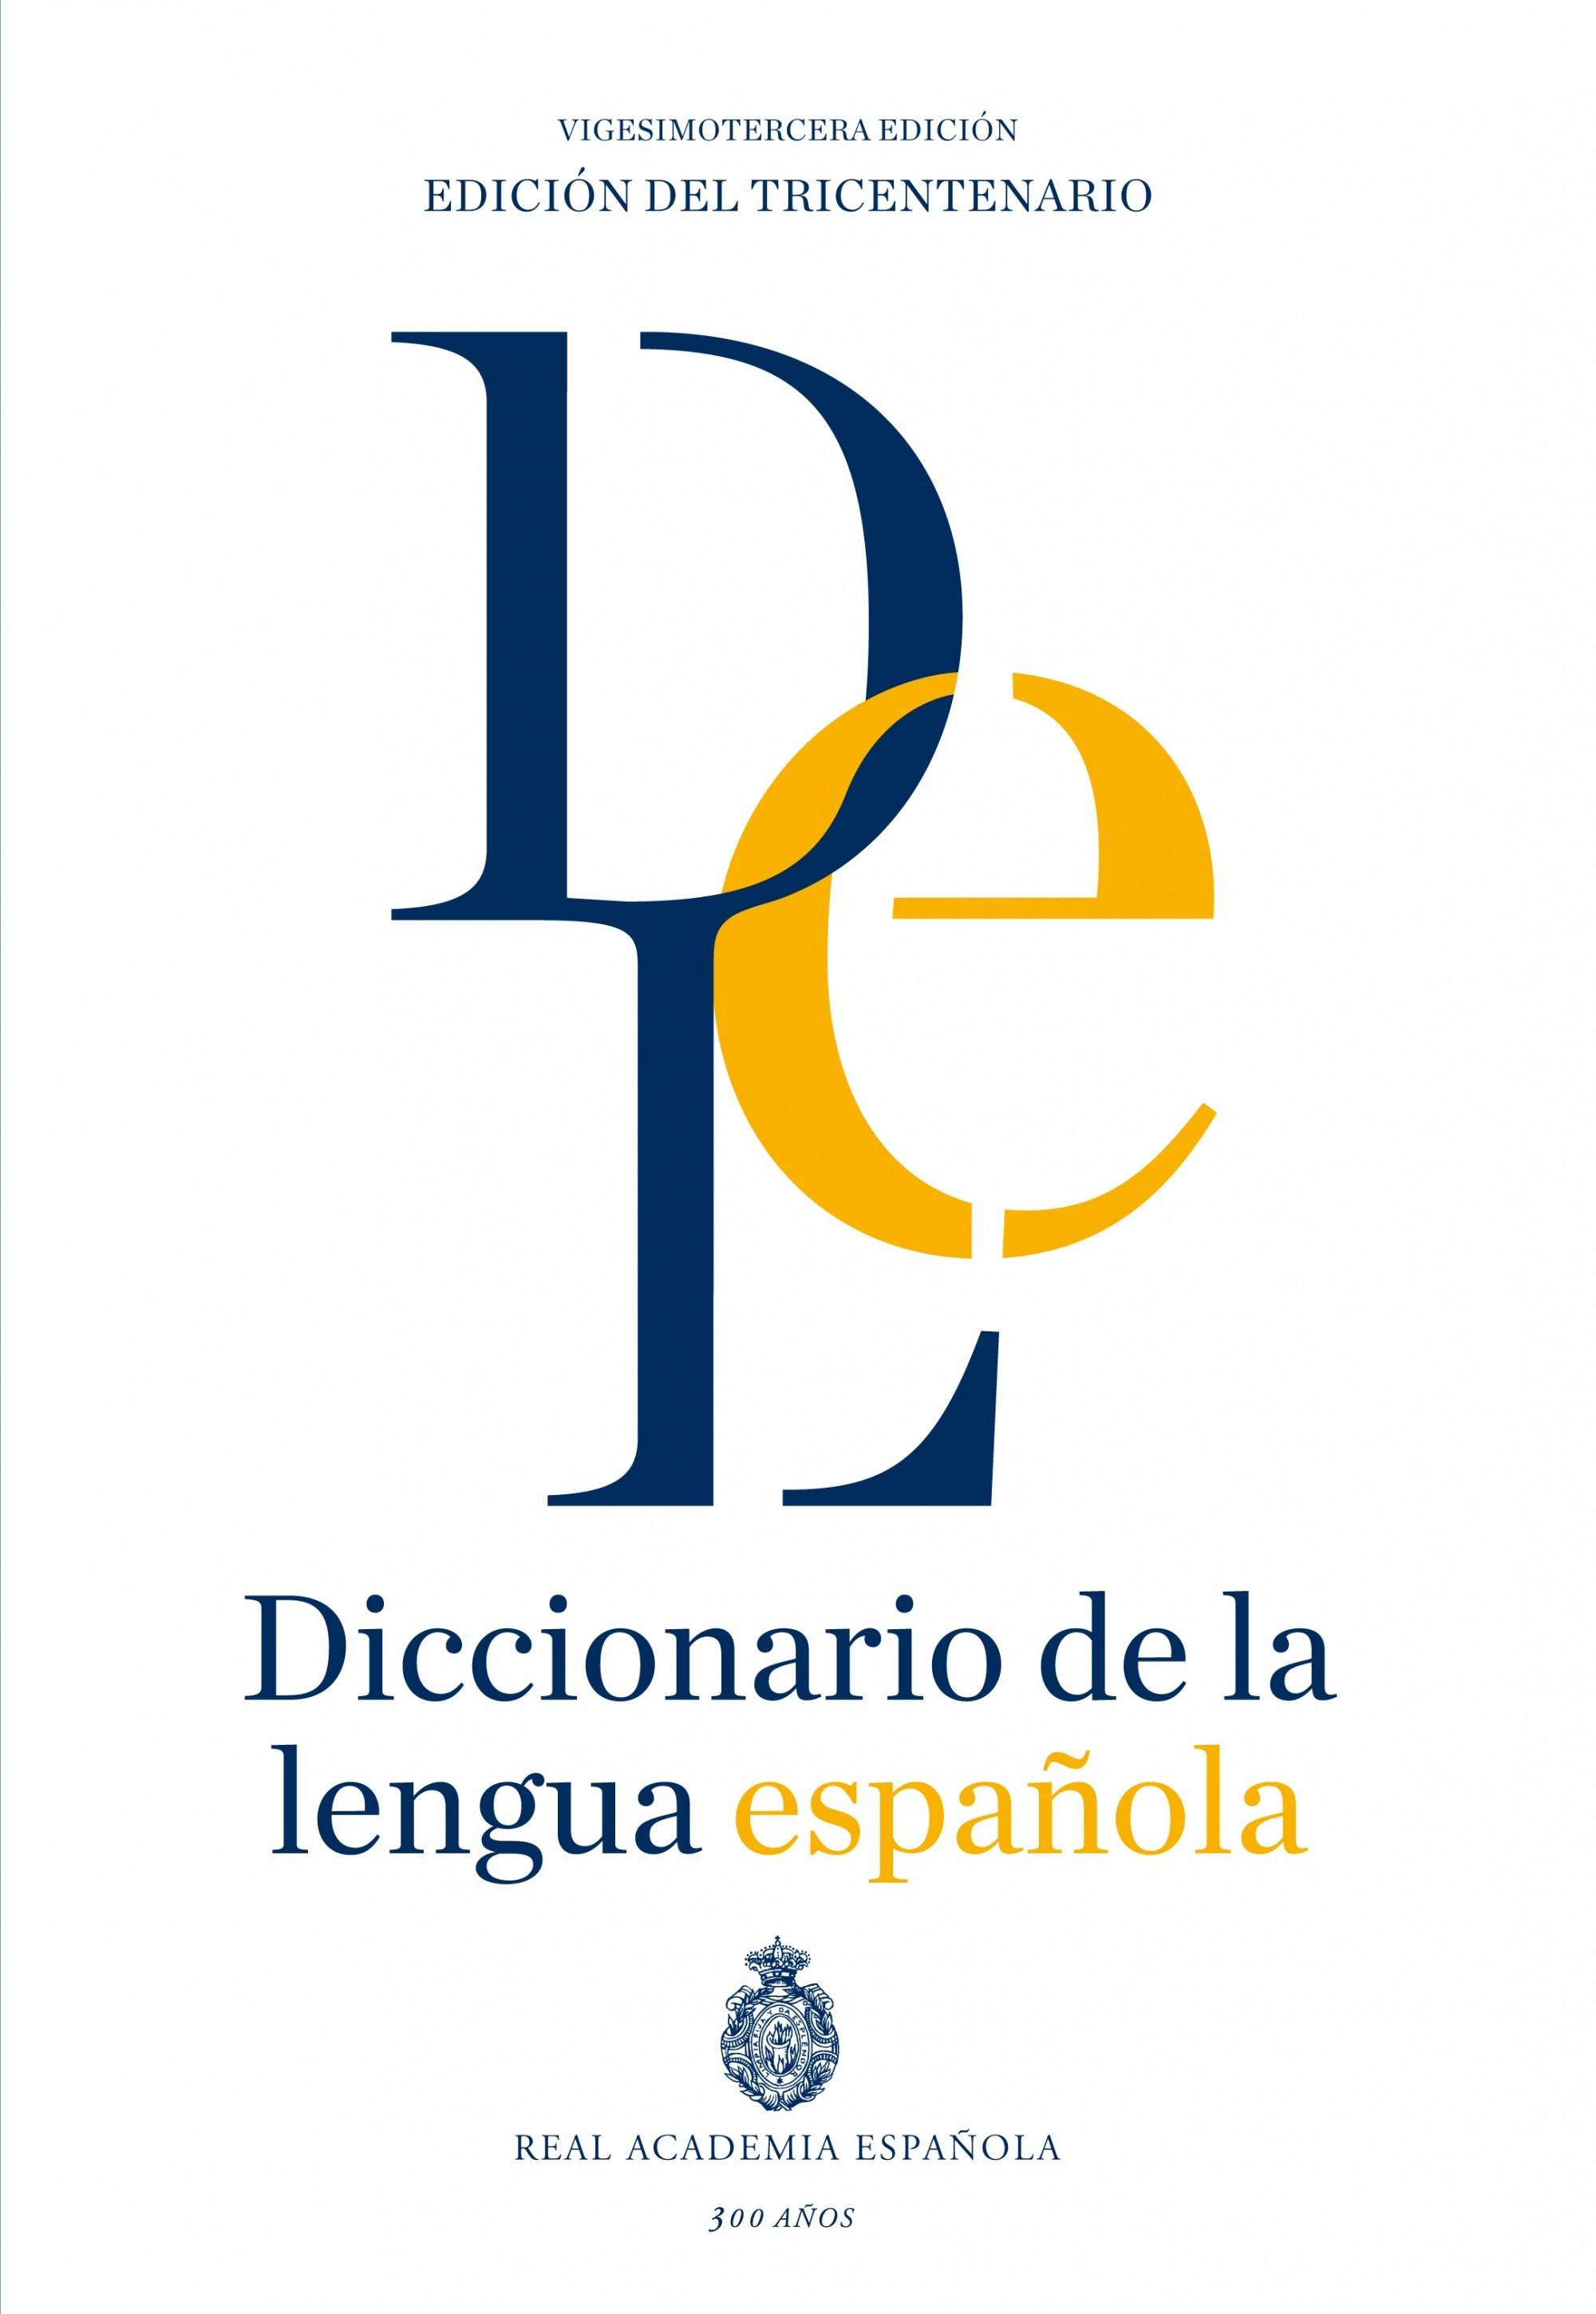 DICCIONARIO DE LA LENGUA ESPAÑOLA. "EDICIÓN DEL TRICENTENARIO"